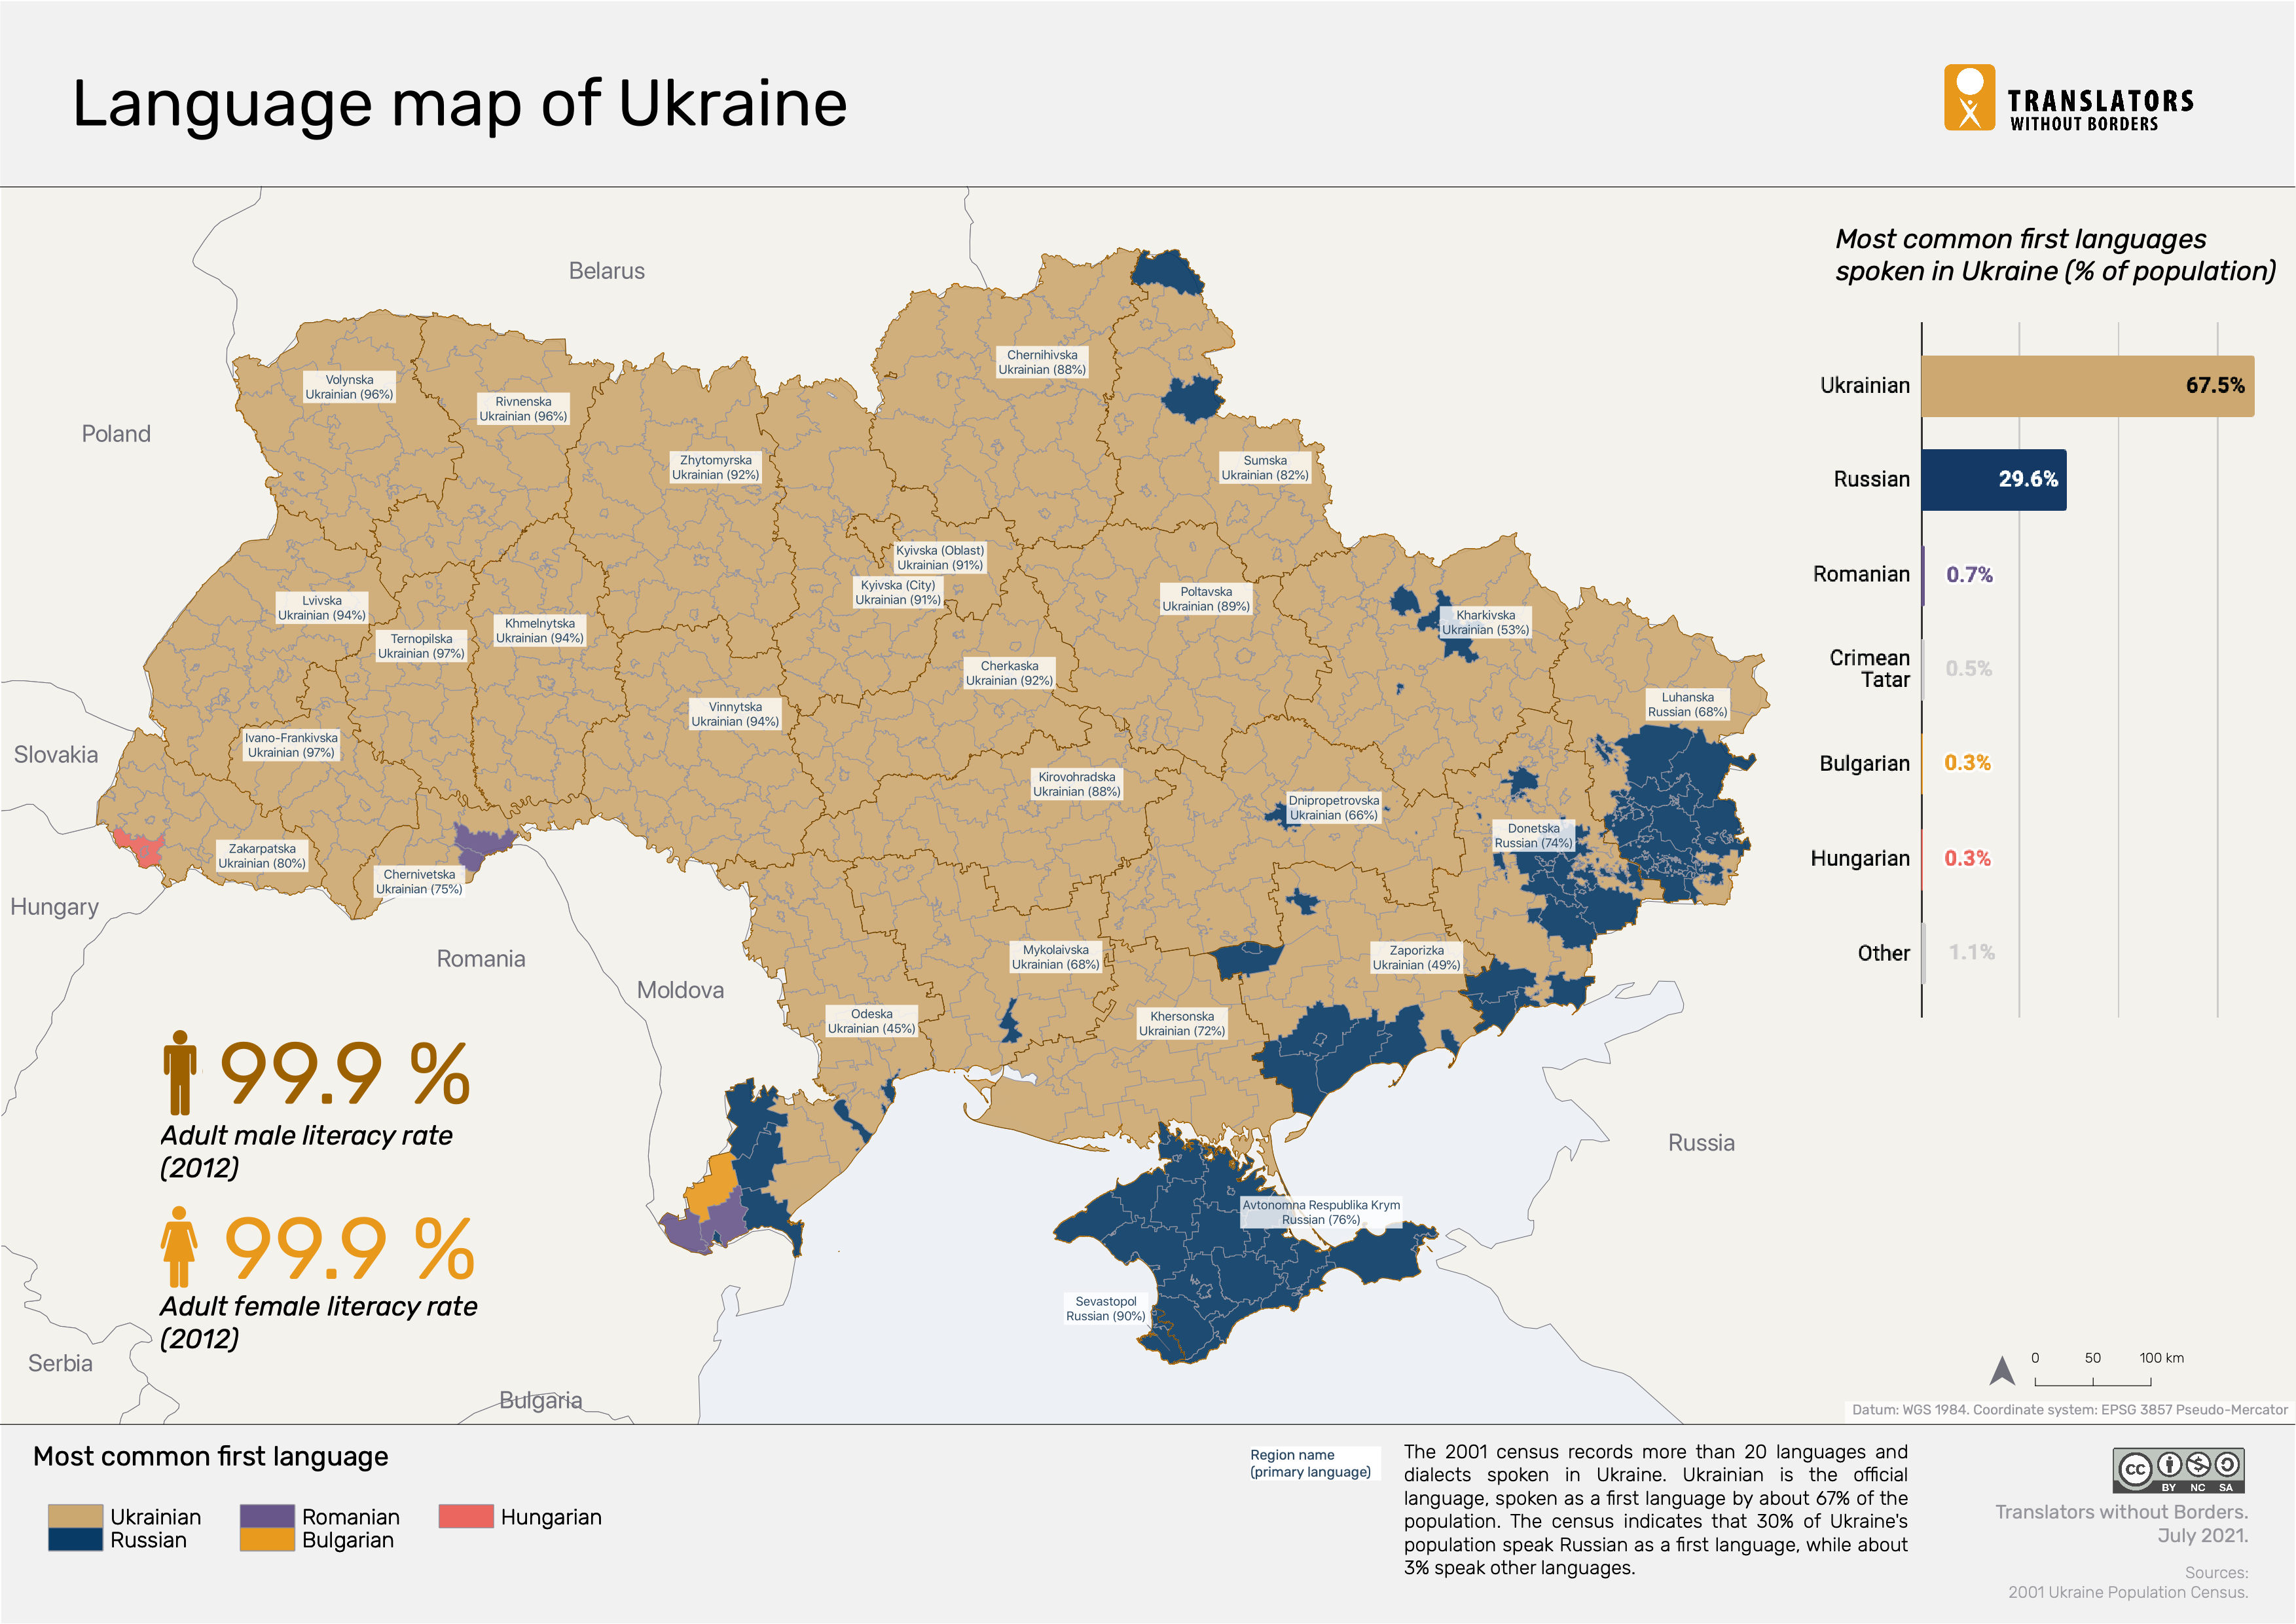 ukraine-language-map-translators-without-borders